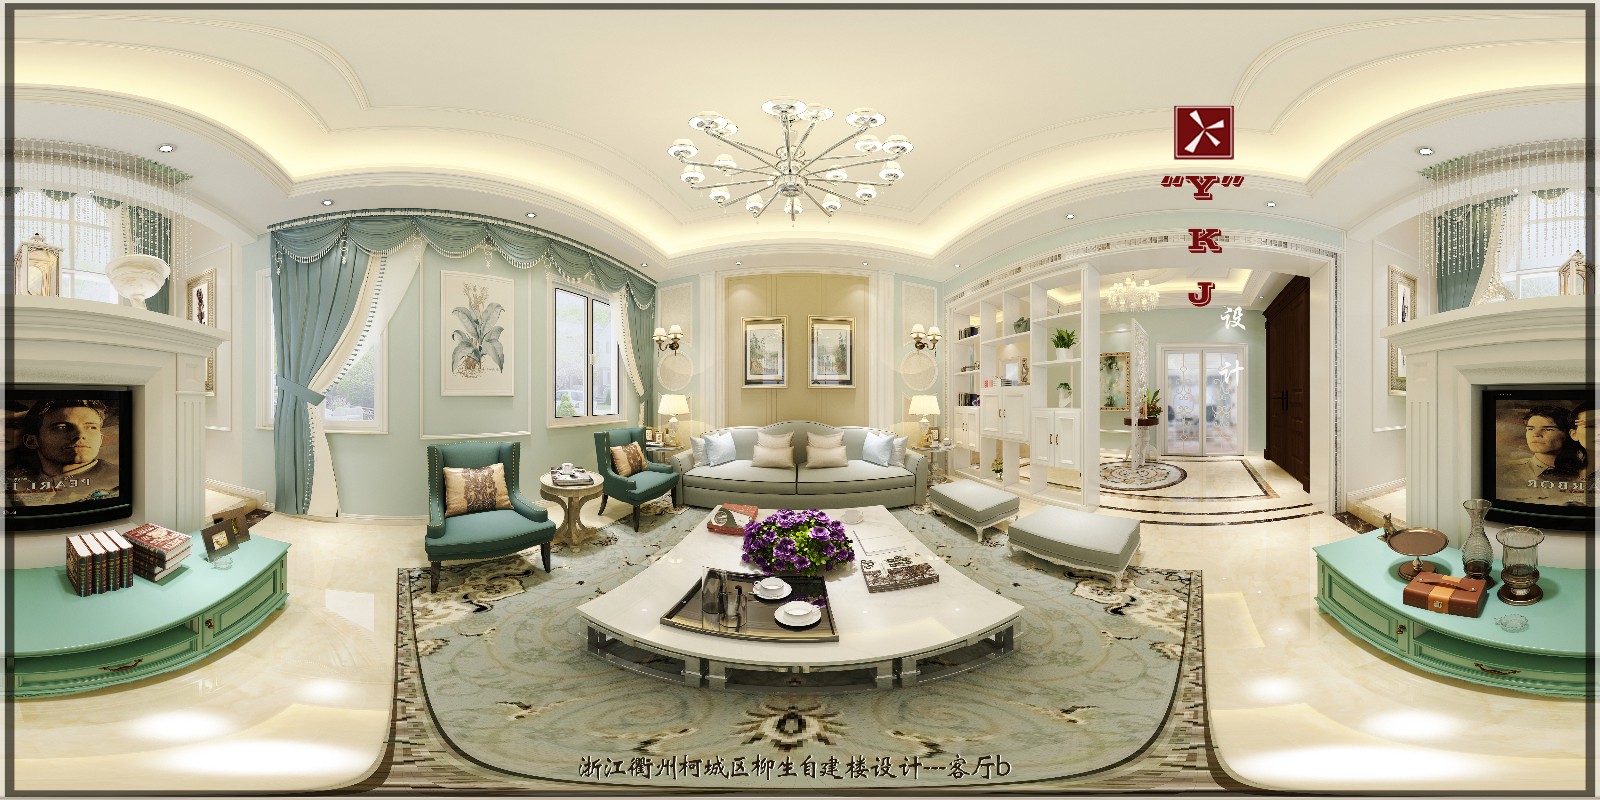 一张360的全景图-室内设计师平台 -室内设计论坛-扮家家室内设计网